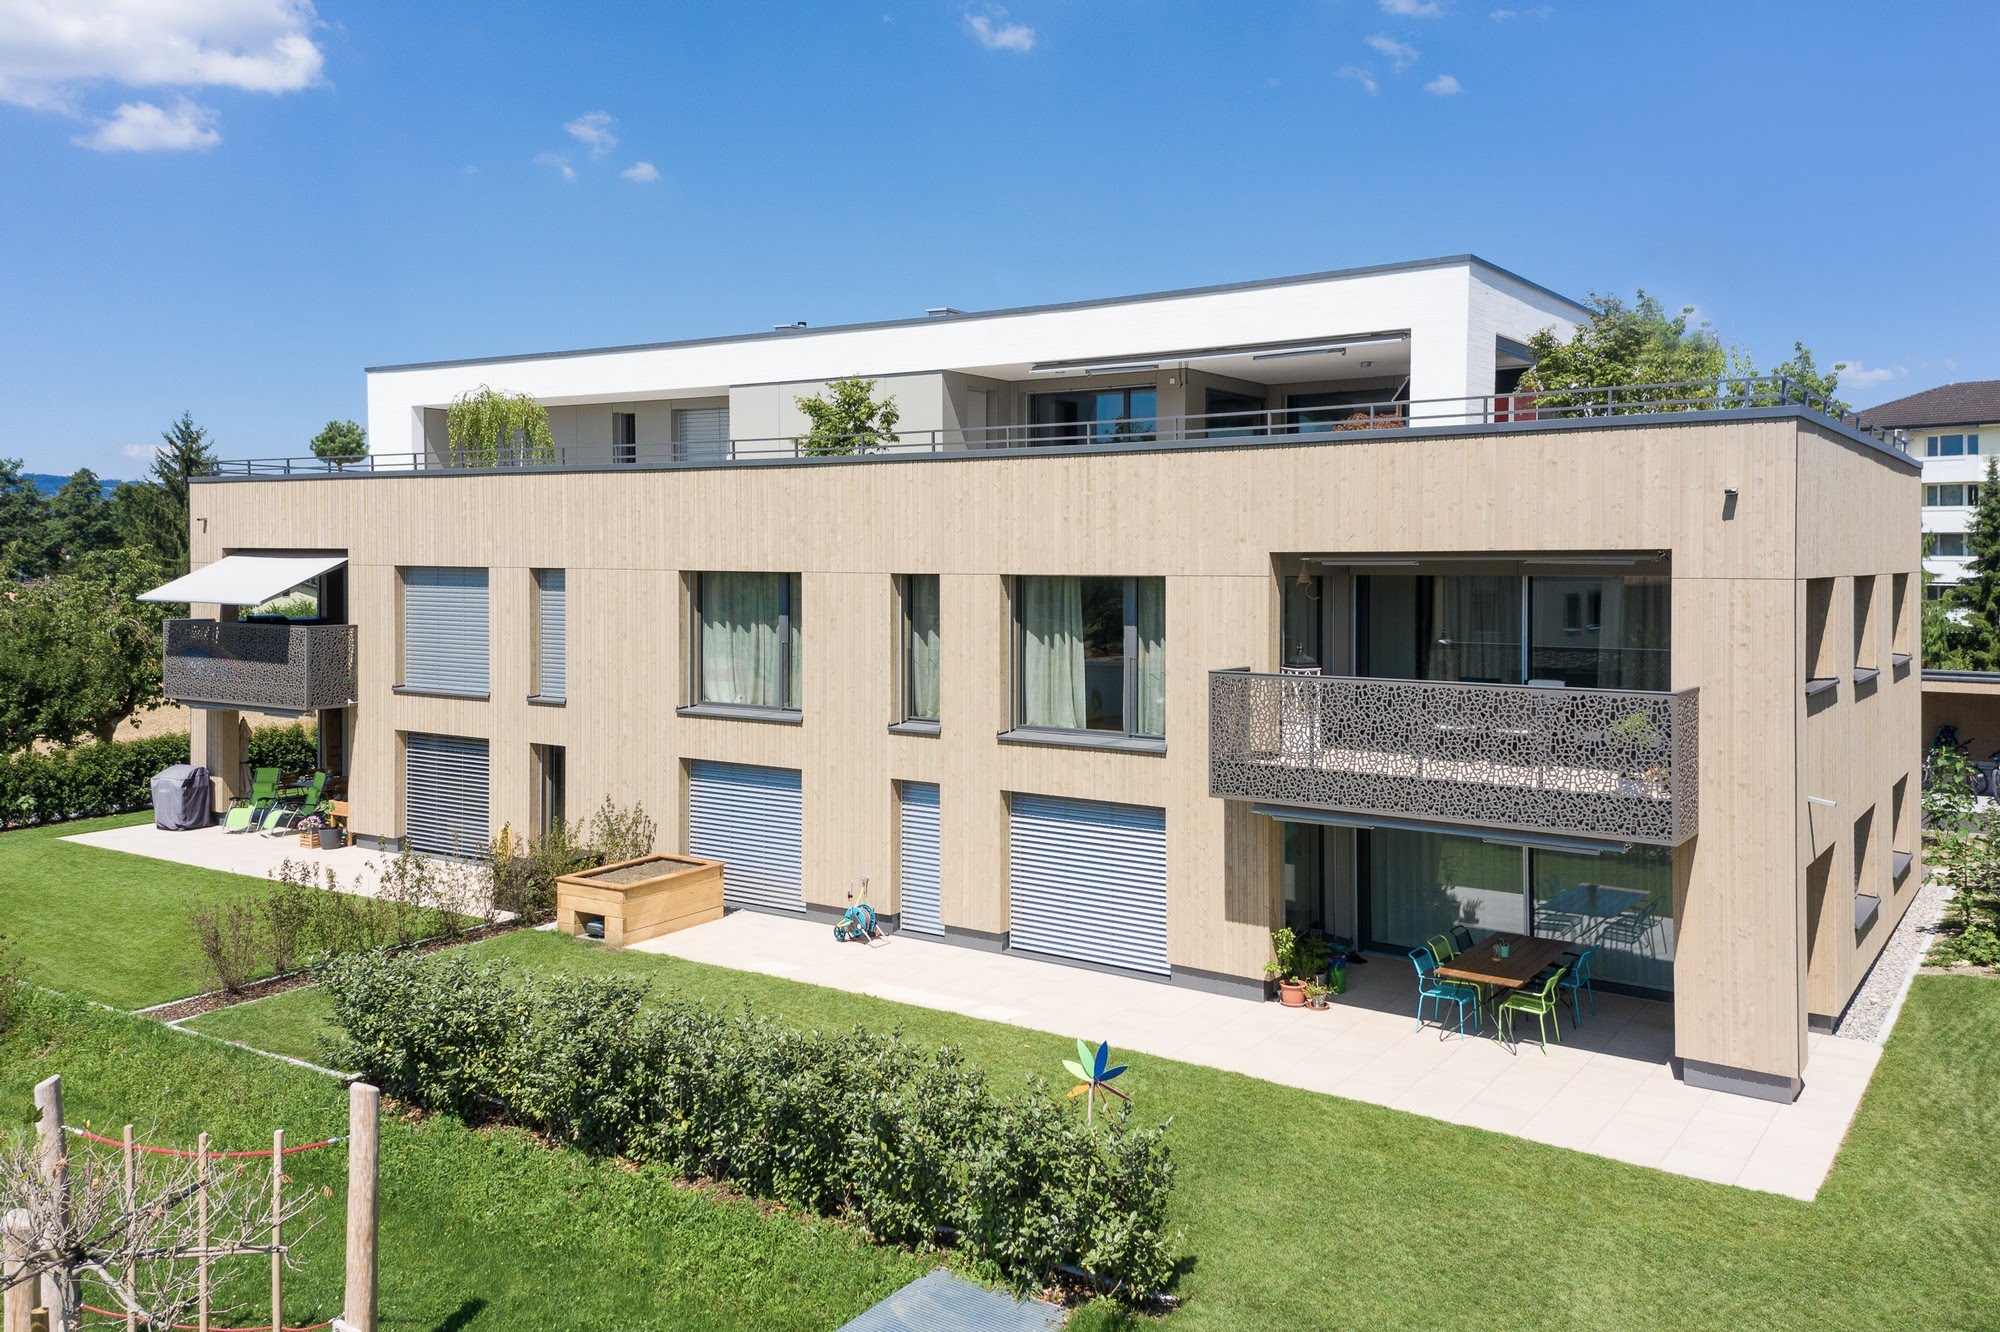 Wohnen MFH Wohnüberbauung in Oberkirch Architektur,Wohnungsbau,Wohnhäuser,Einfamilienhäuser,Mehrfamilienhäuser